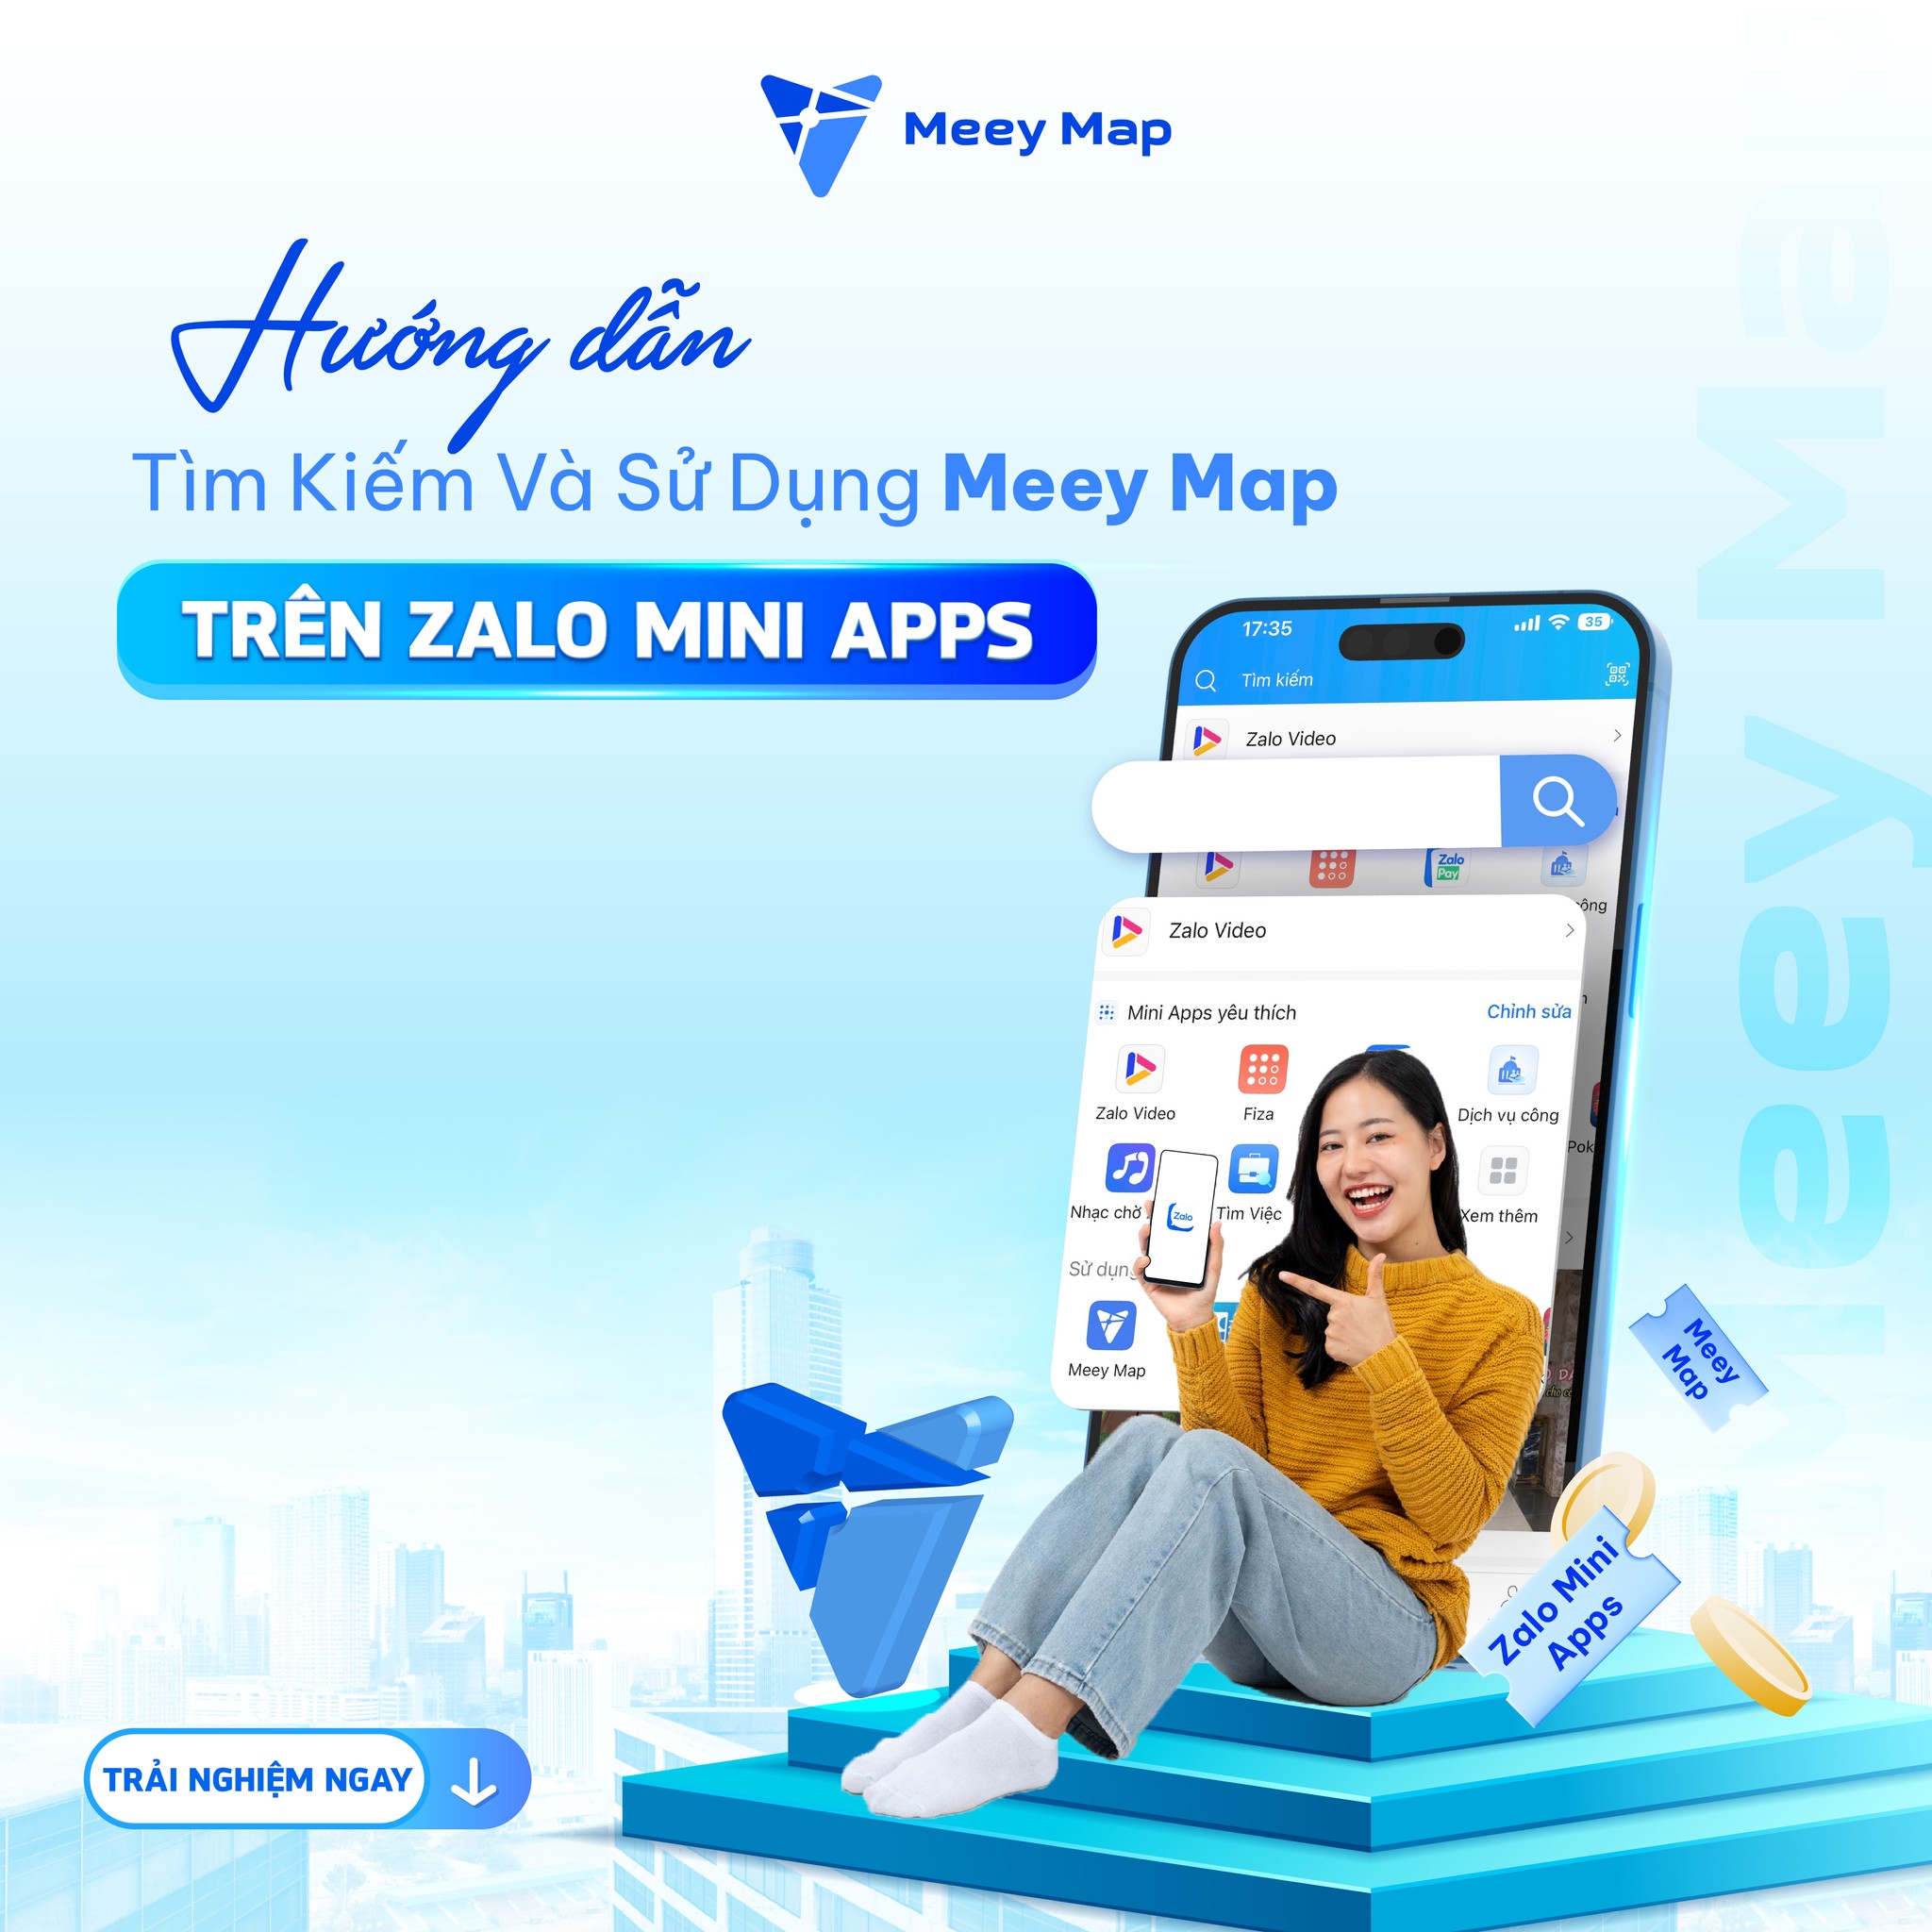 
Ứng dụng Meey Map đã xuất hiện trên Zalo Mini Apps
